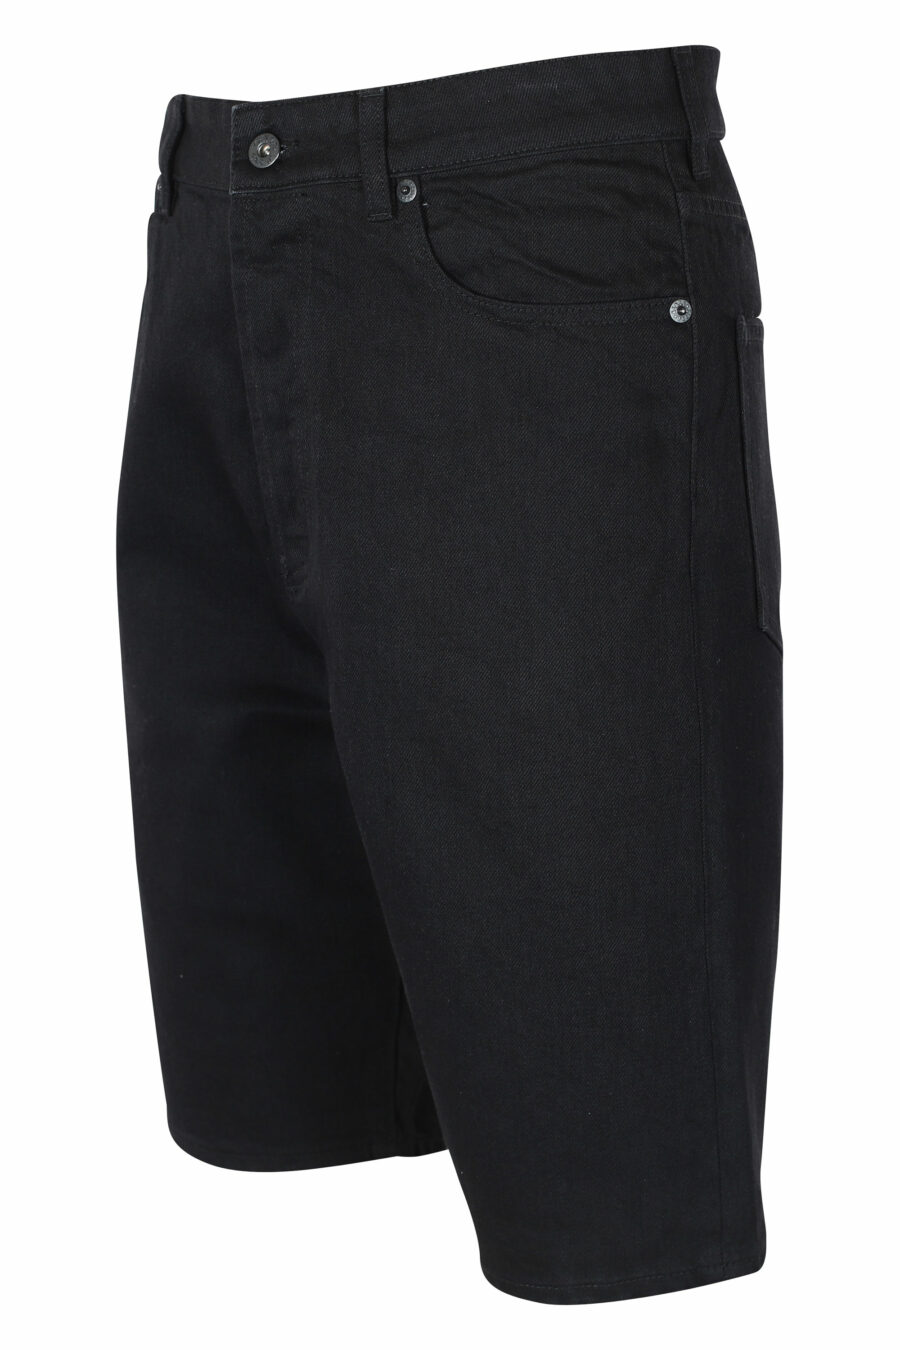 Pantalón vaquero negro corto con minilogo - IMG 9605